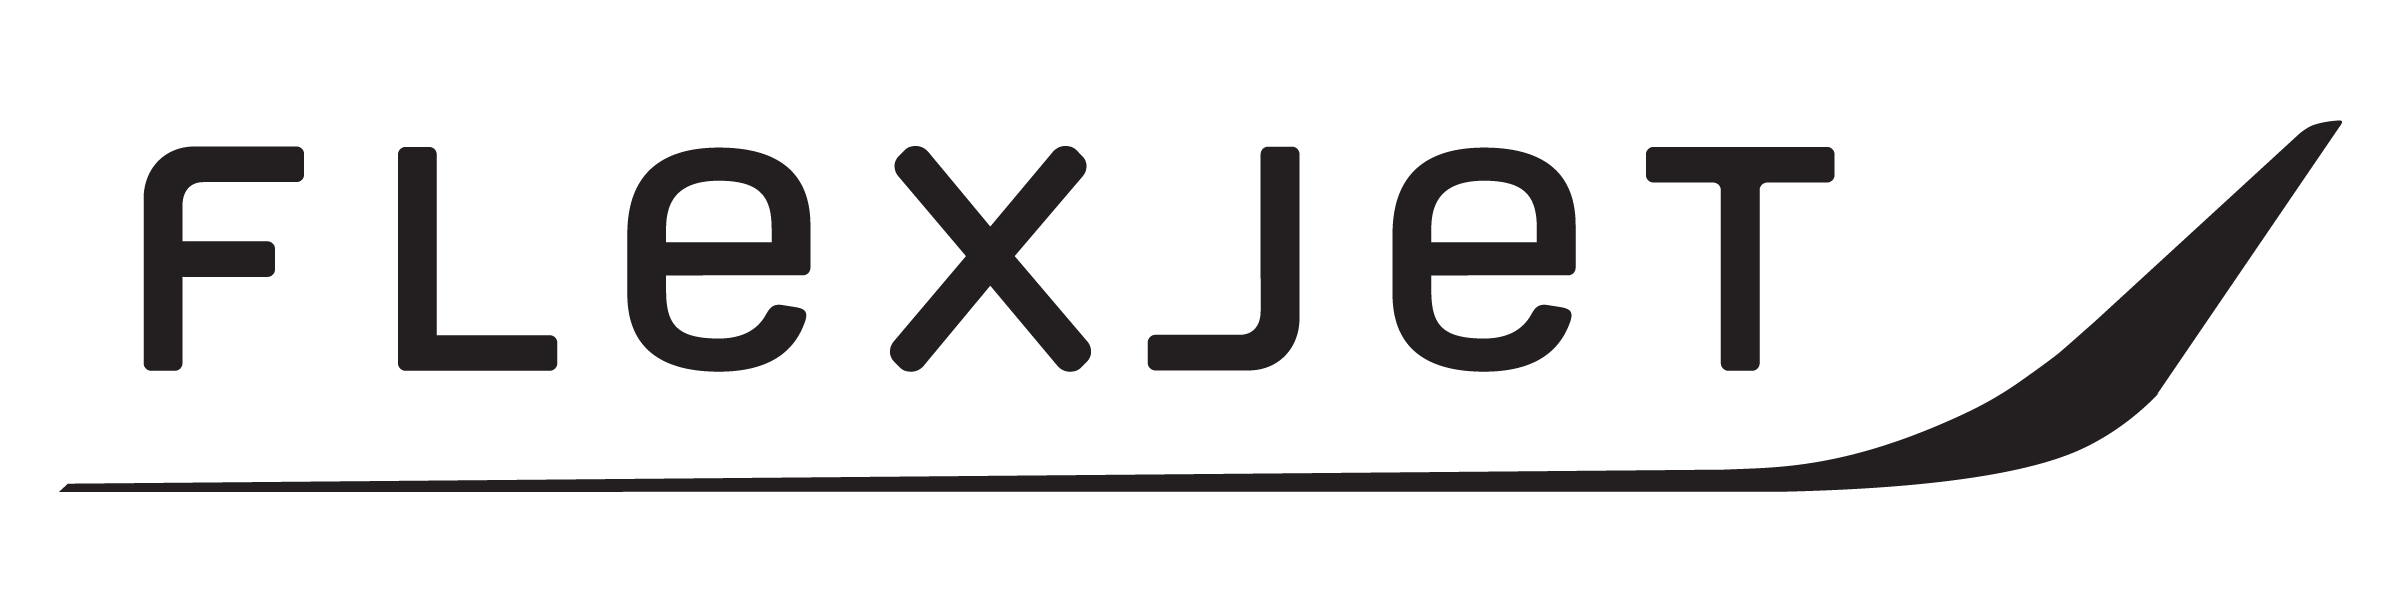 FlexJet logo